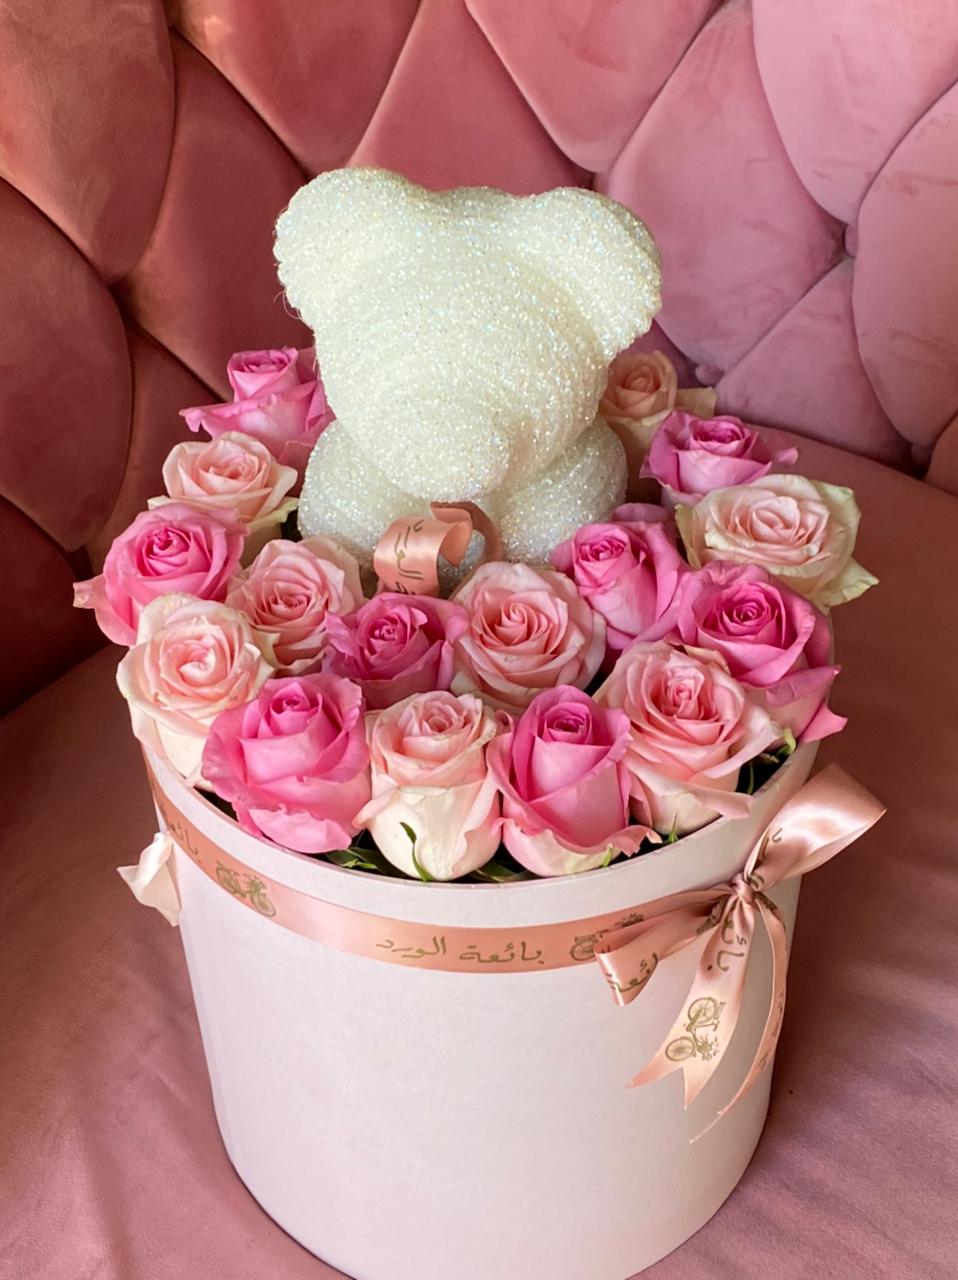 Crystal Teddy bear with Flower Box - Bae3at Elward flower shop 